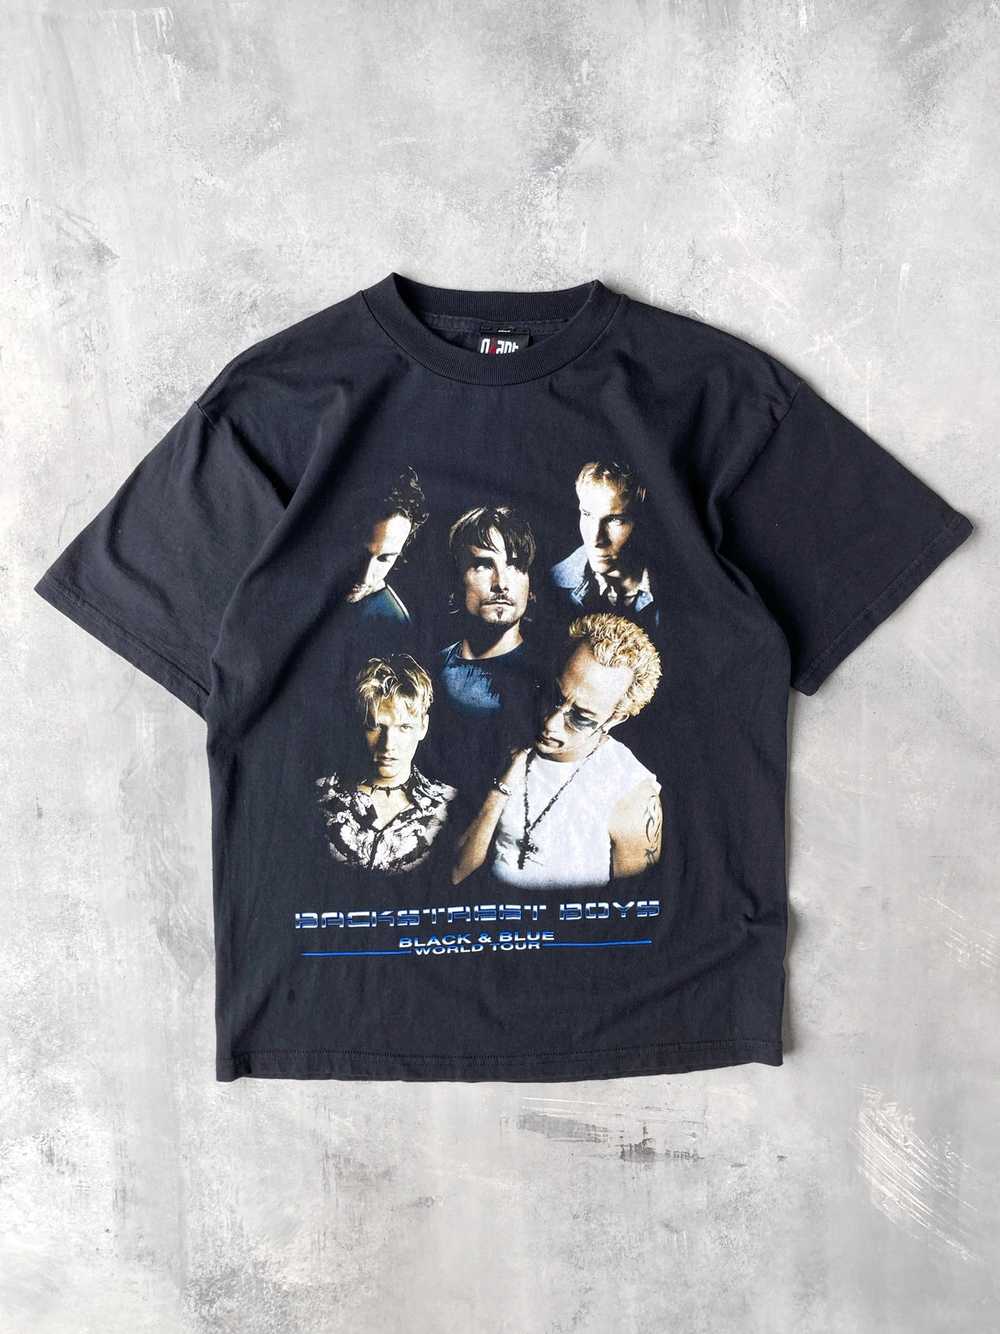 backstreet boys shirt - Gem